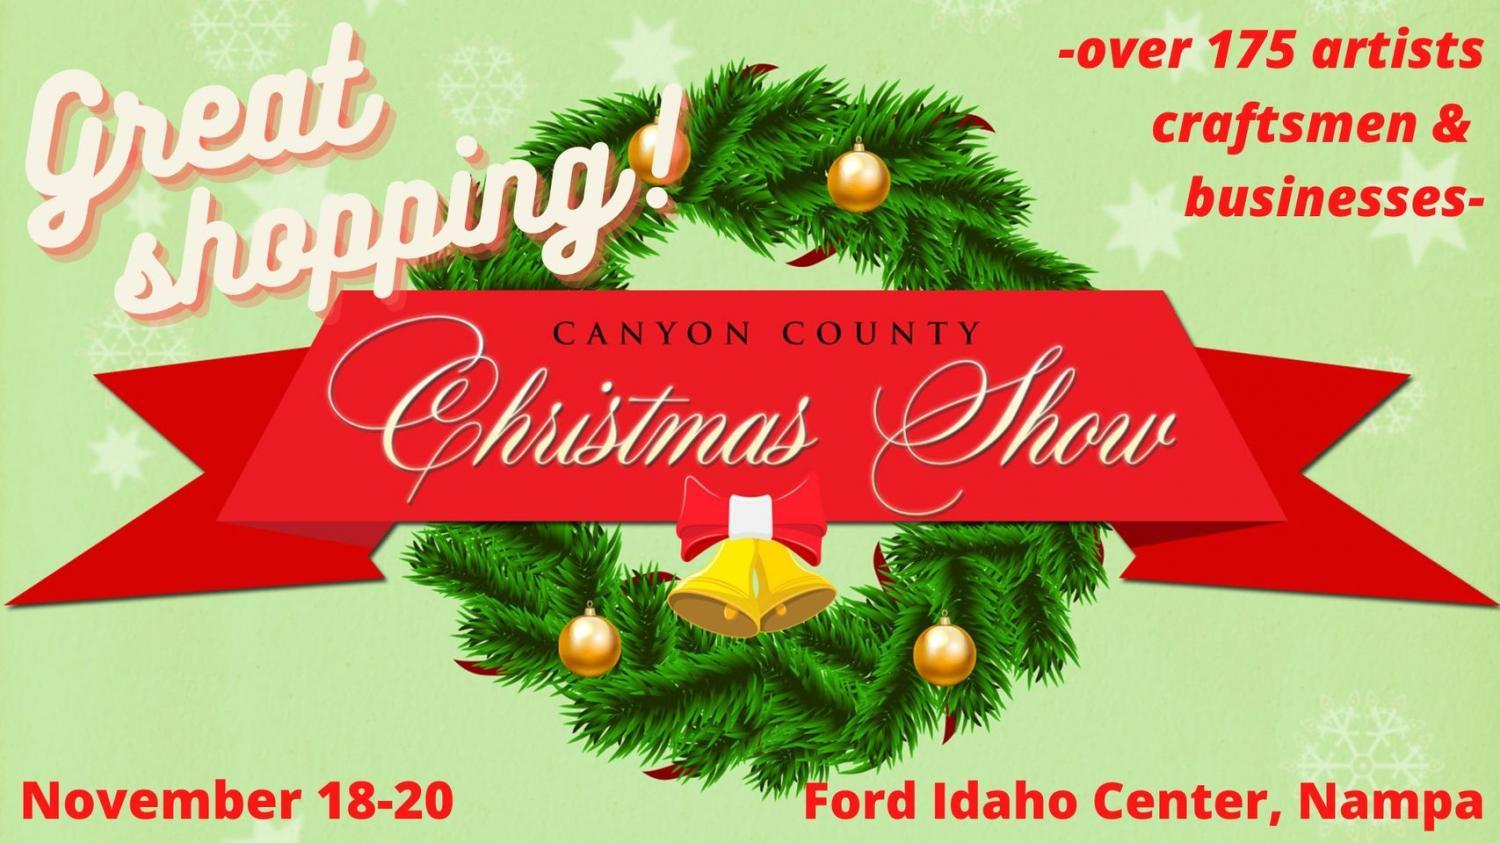 Canyon County Christmas Show